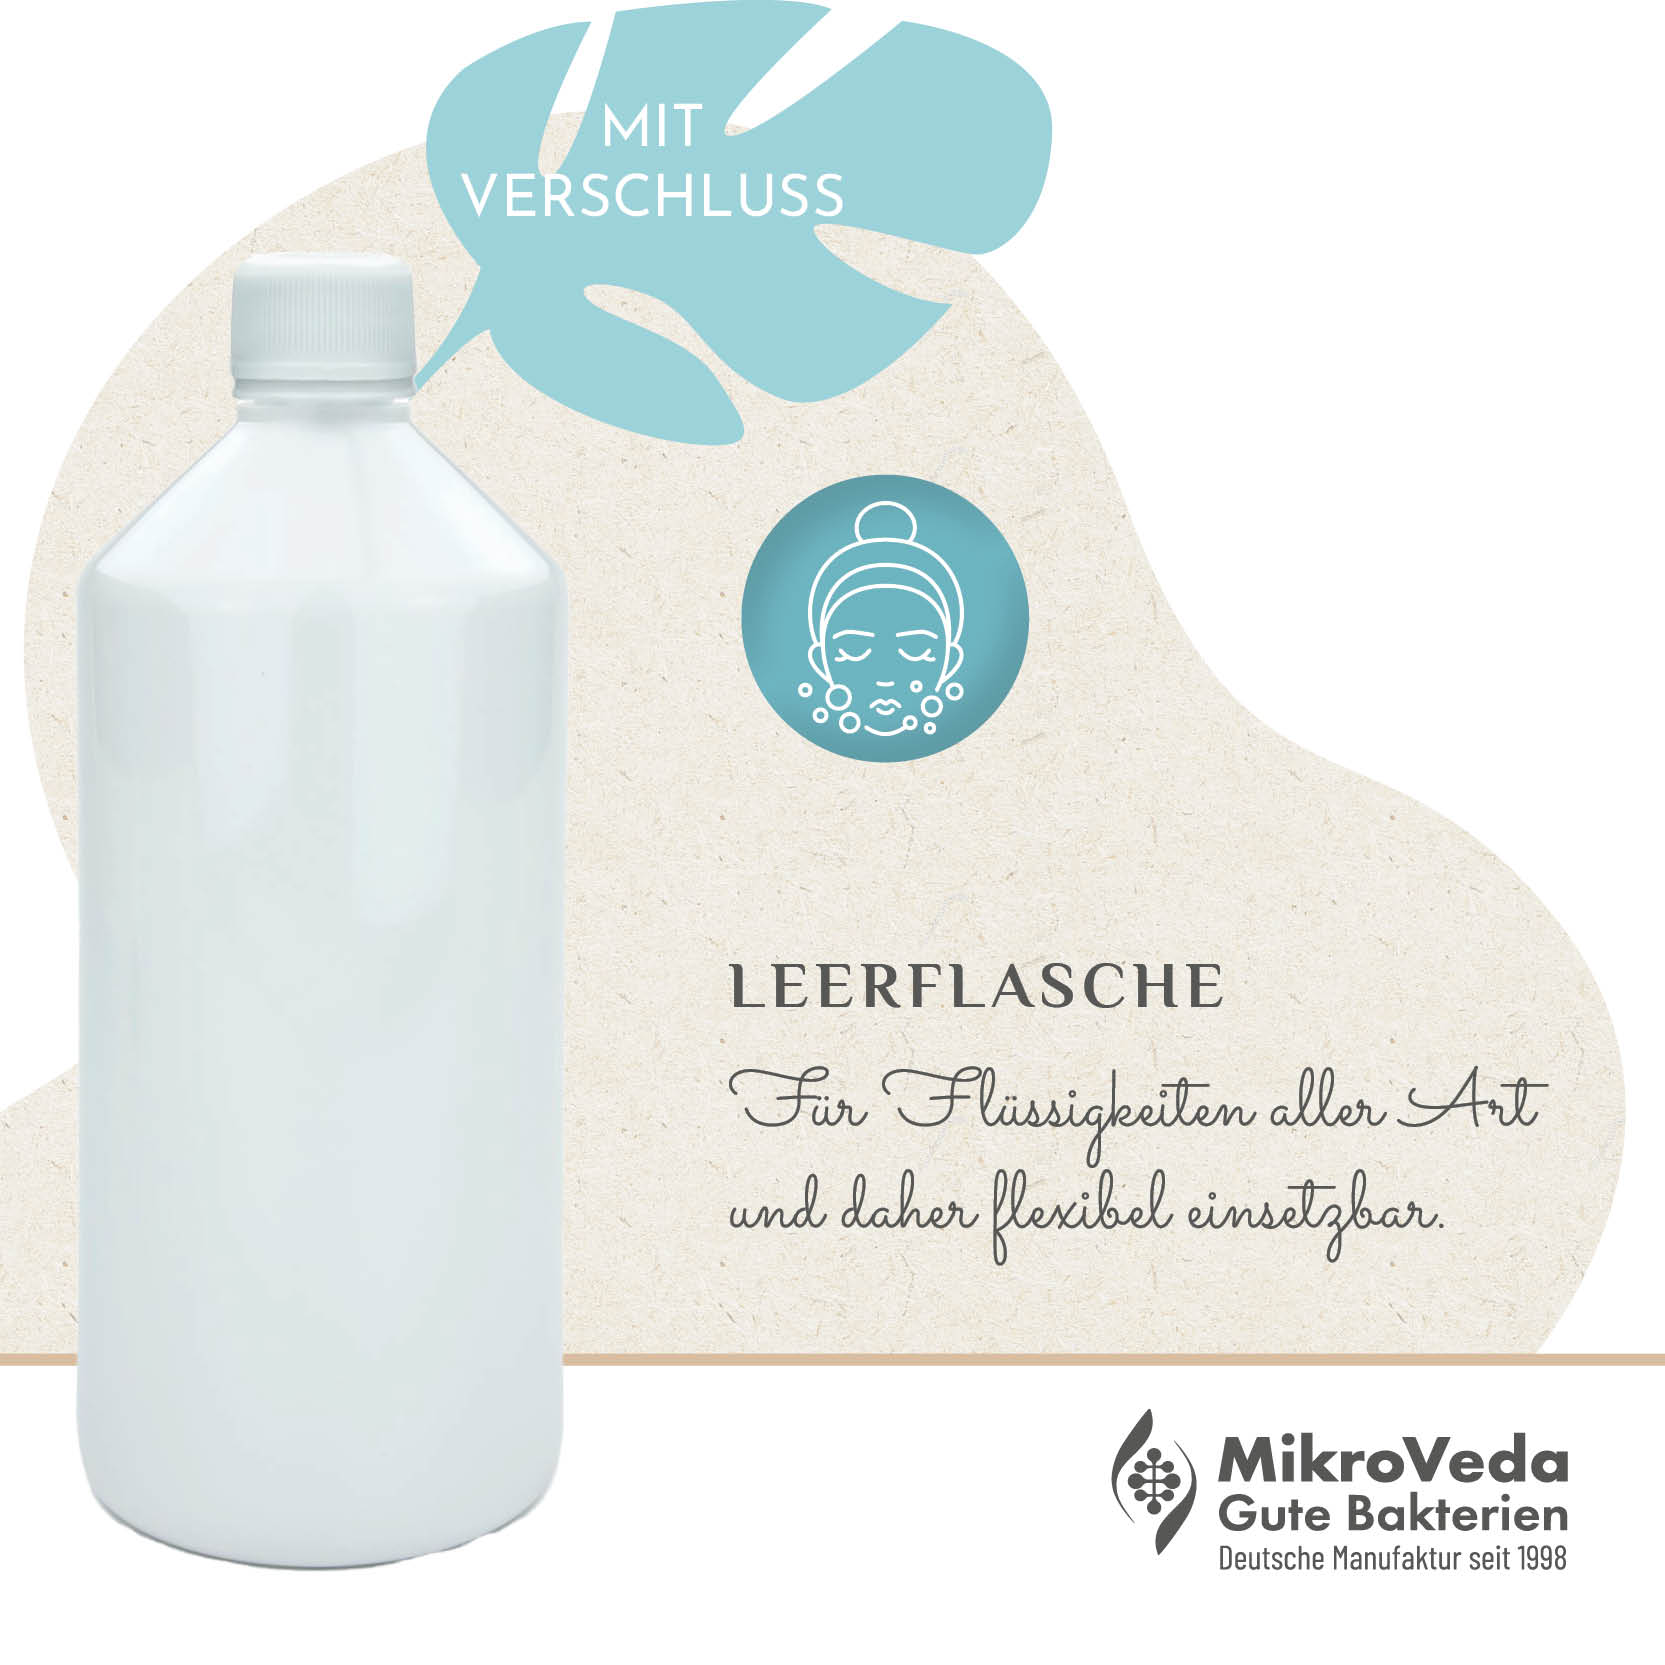 MikroVeda Leerflasche 1 Liter R-PET-Flasche (100% recycelt) SIROP mit  Verschluss